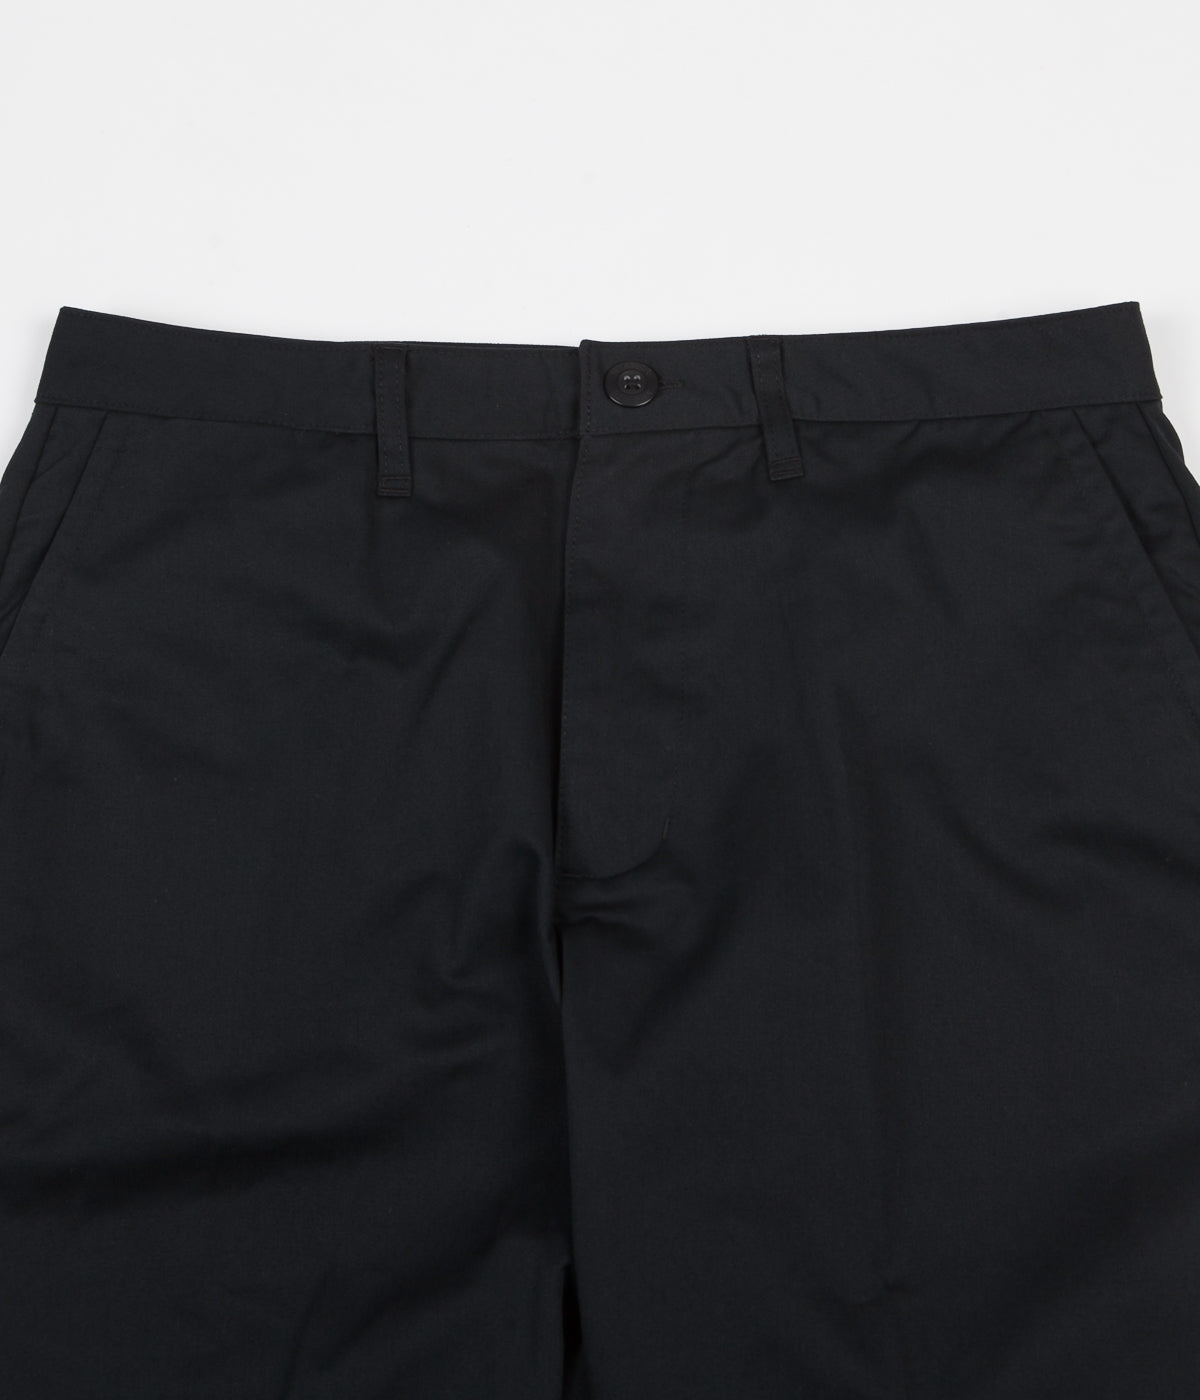 Nike SB Dri-FIT FTM Trousers - Black | Flatspot